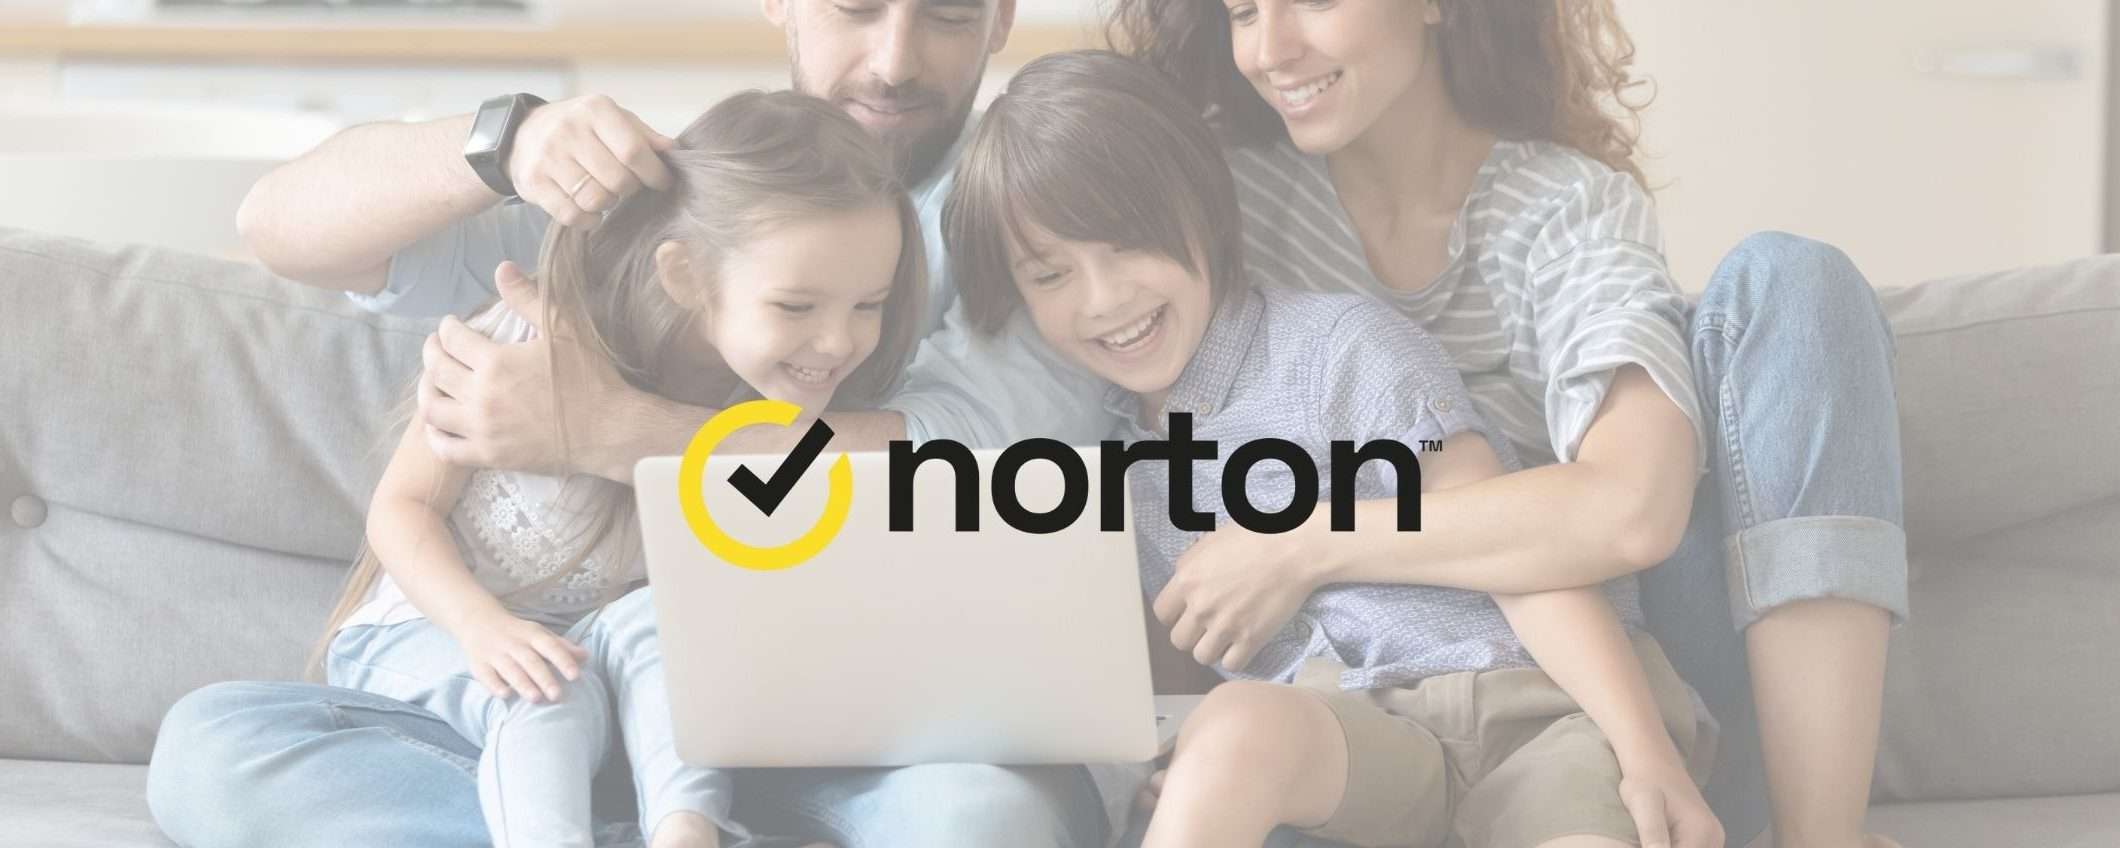 Norton Antivirus: sicurezza completa a prezzi vantaggiosi